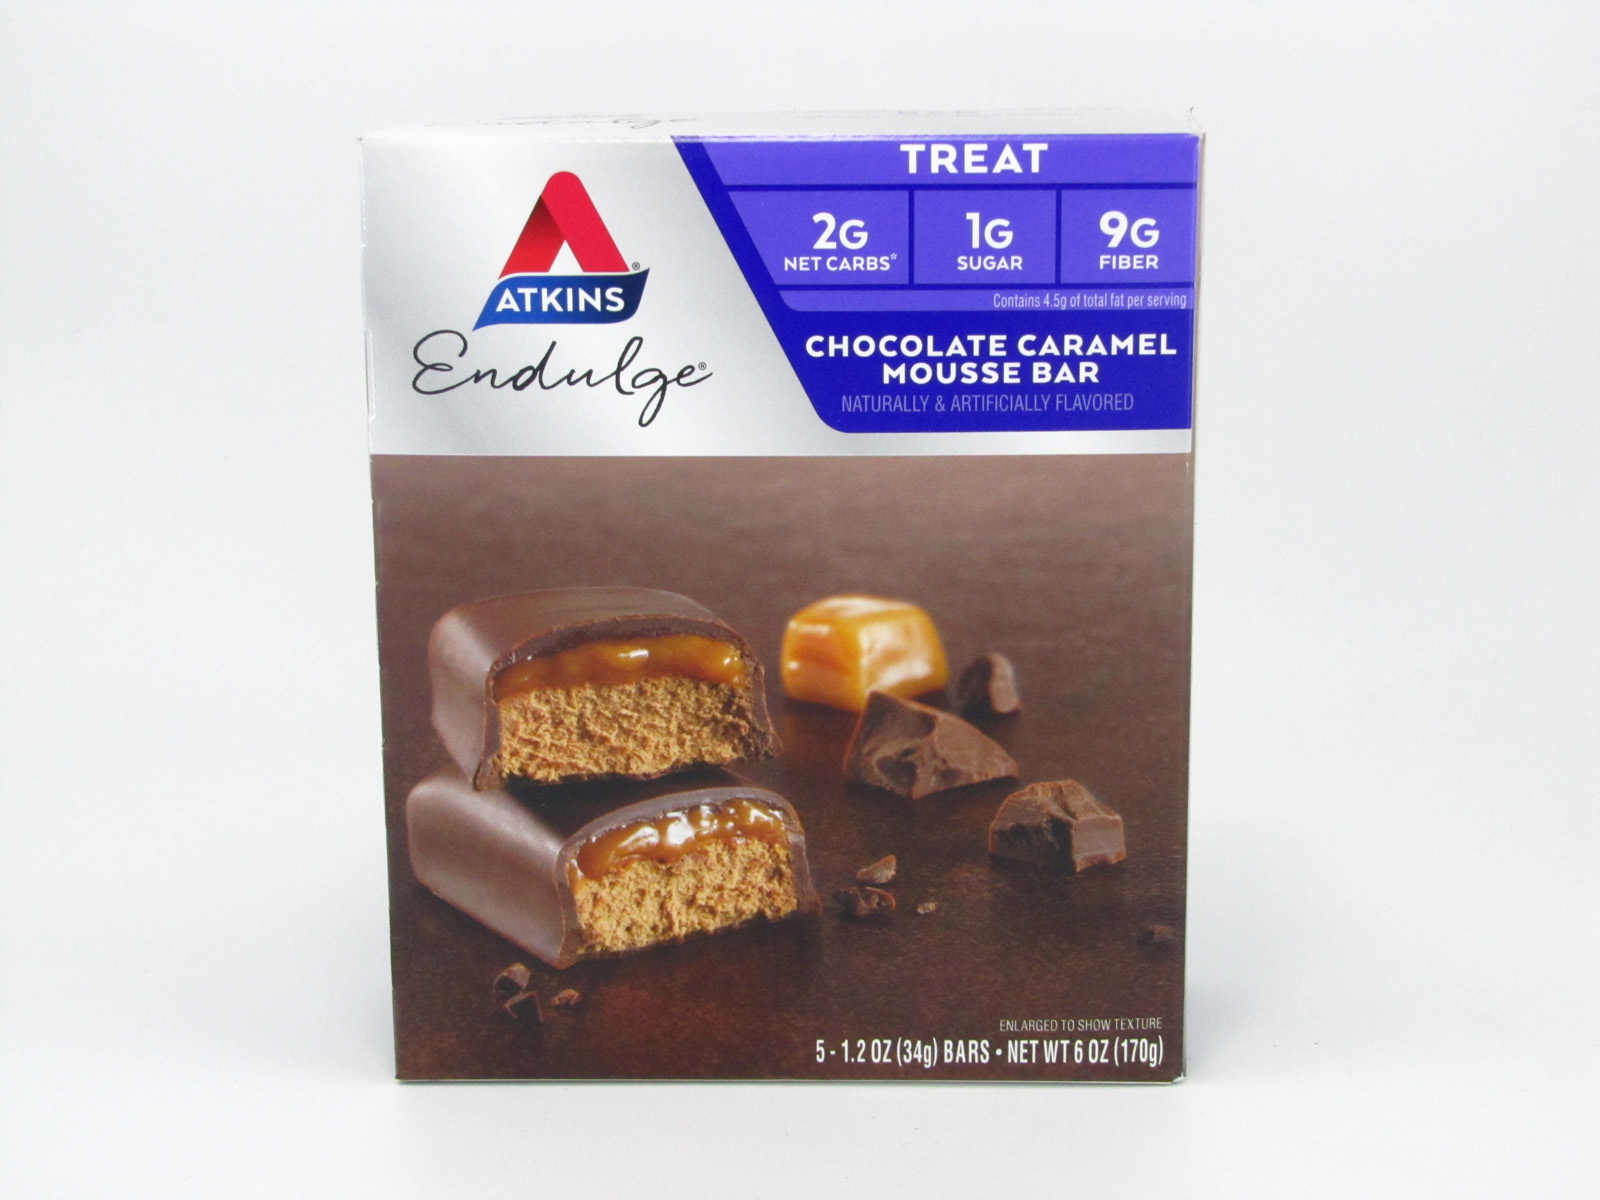 Endulge Chocolate Caramel Mousse Bar front of box image